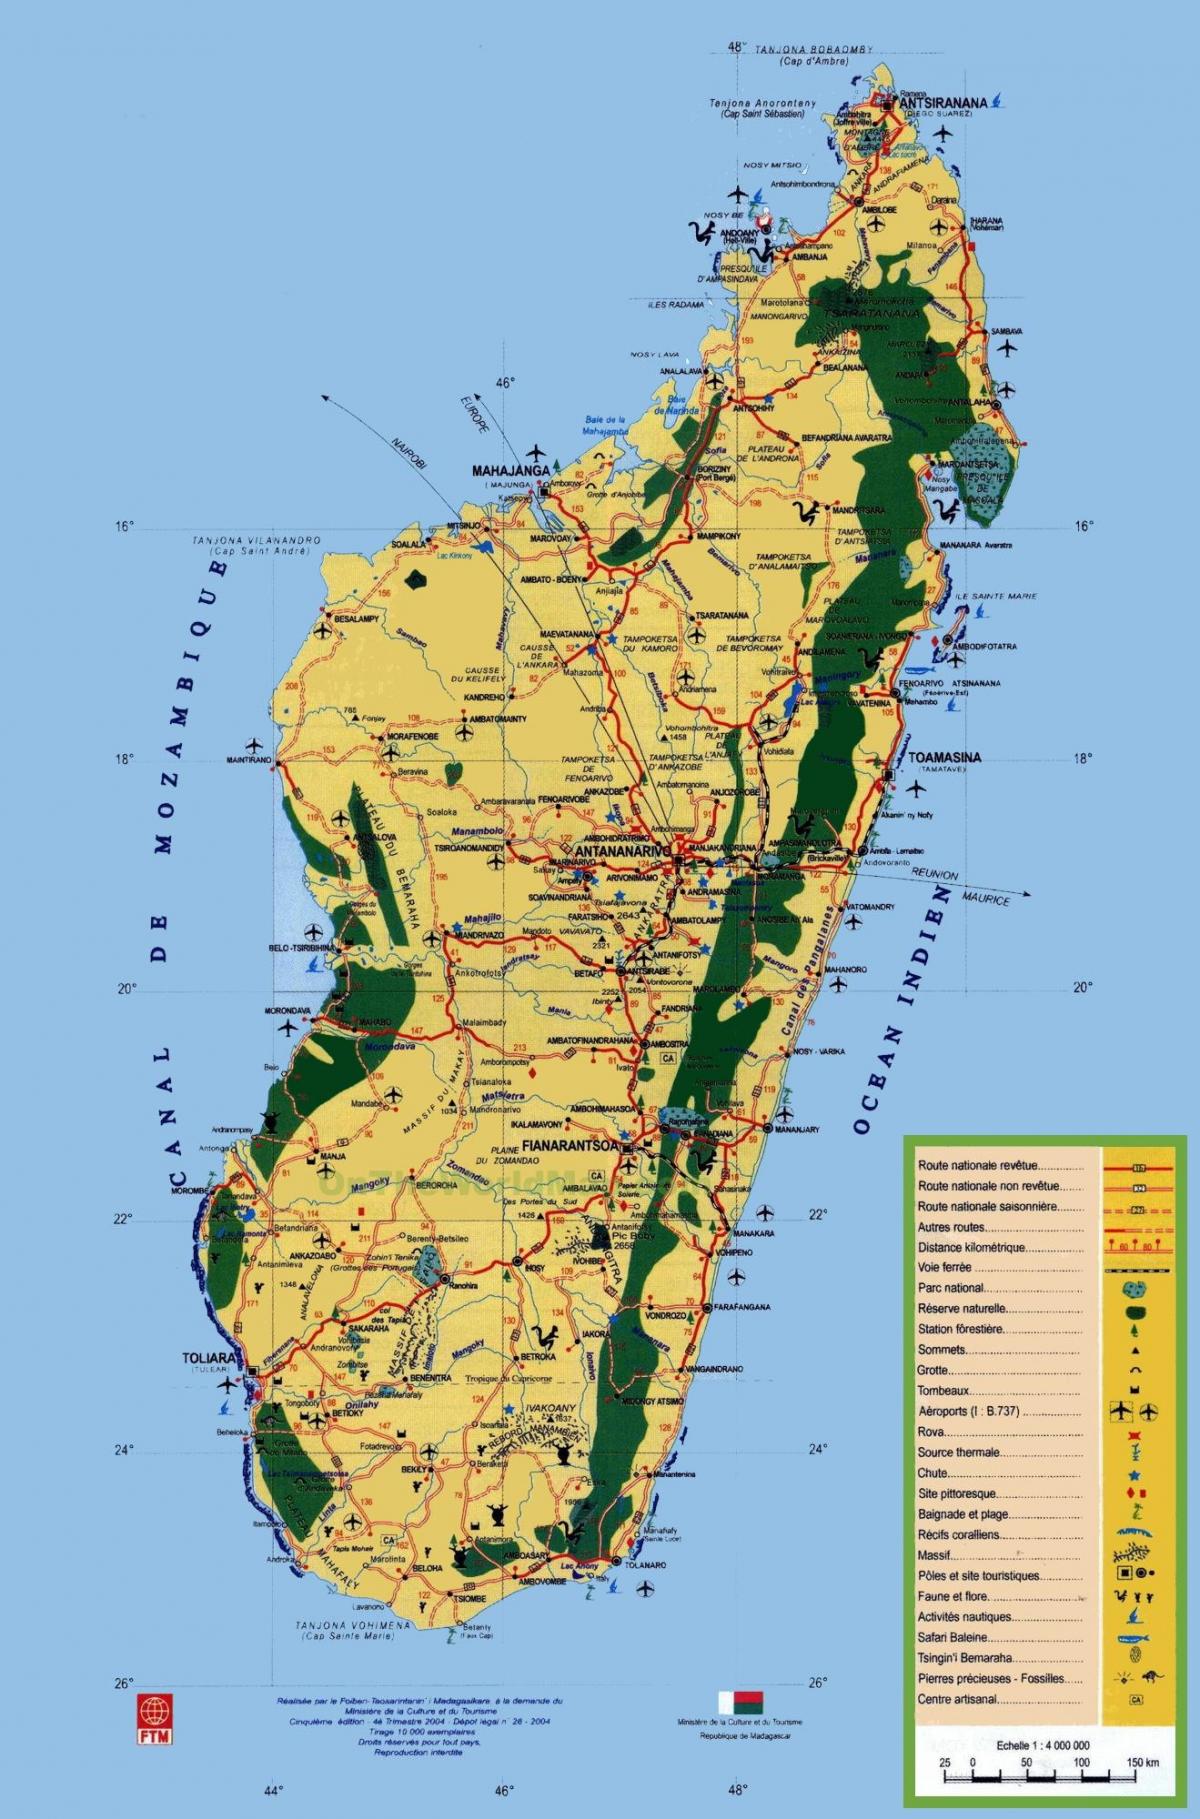 Madagaskar toeristische attracties kaart